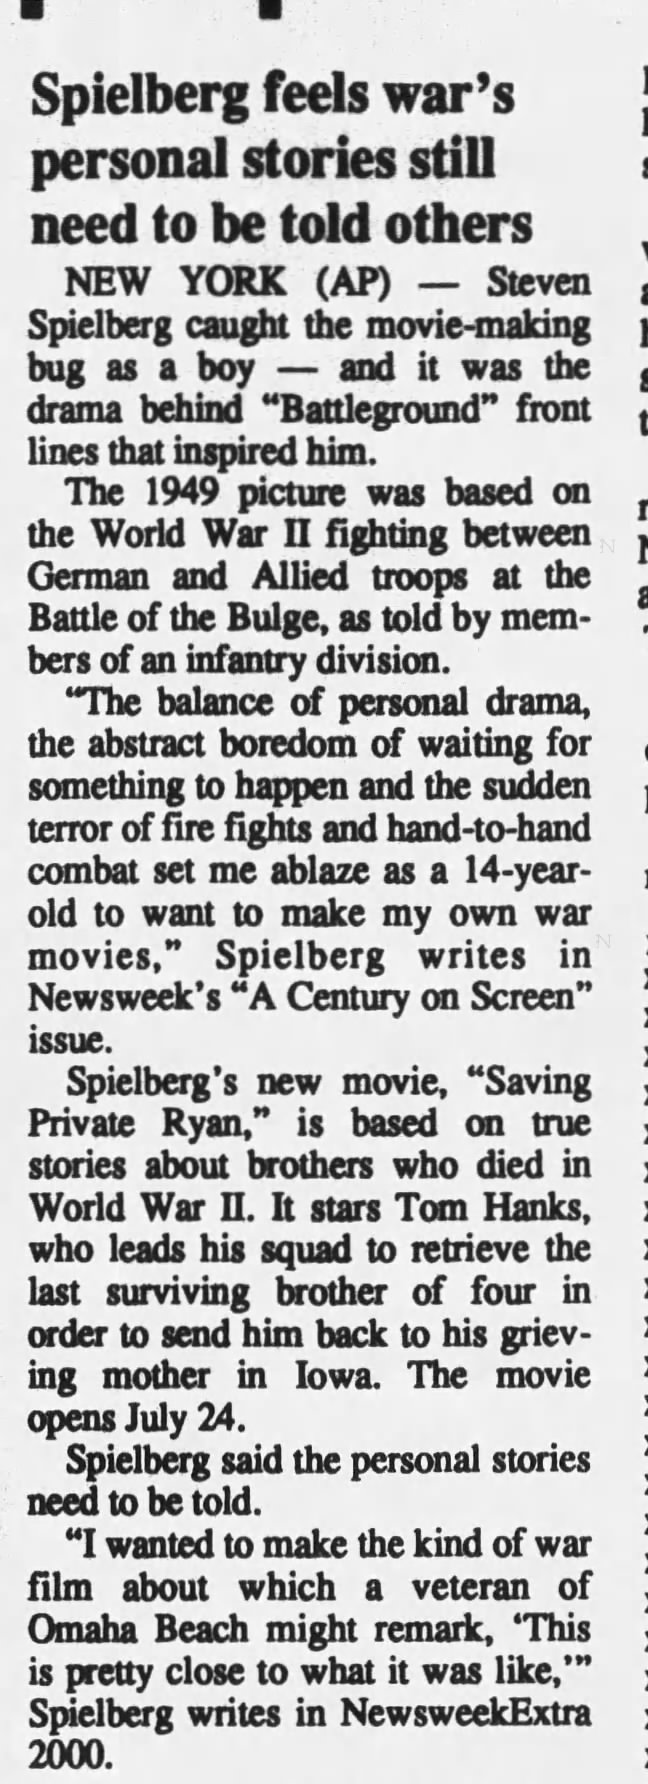 Spielberg on War Movies / Saving Private Ryan